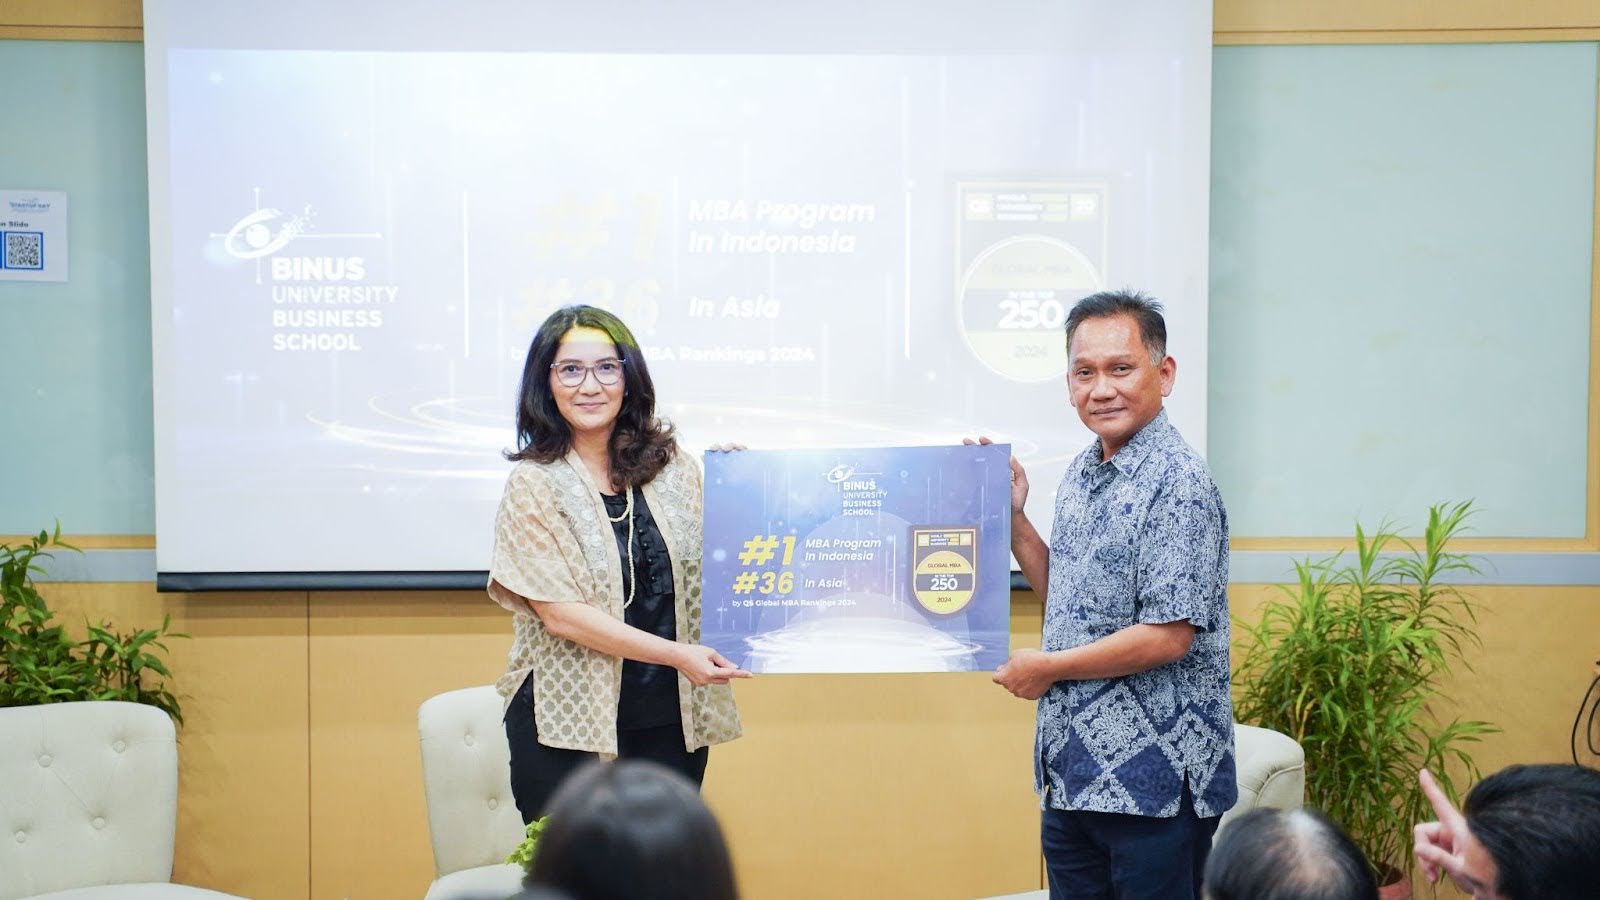 (Simbolis pengumuman resmi pencapaian BINUS Business School di QS Global MBA 2024 yang menjadikan BBS sebagai MBA program terunggul di Indonesia. Diterima oleh Dr. Rini Setiowati - Dekan BBS Master Program dari Dezie L. Warganegara sebagai Executive Dean BBS)